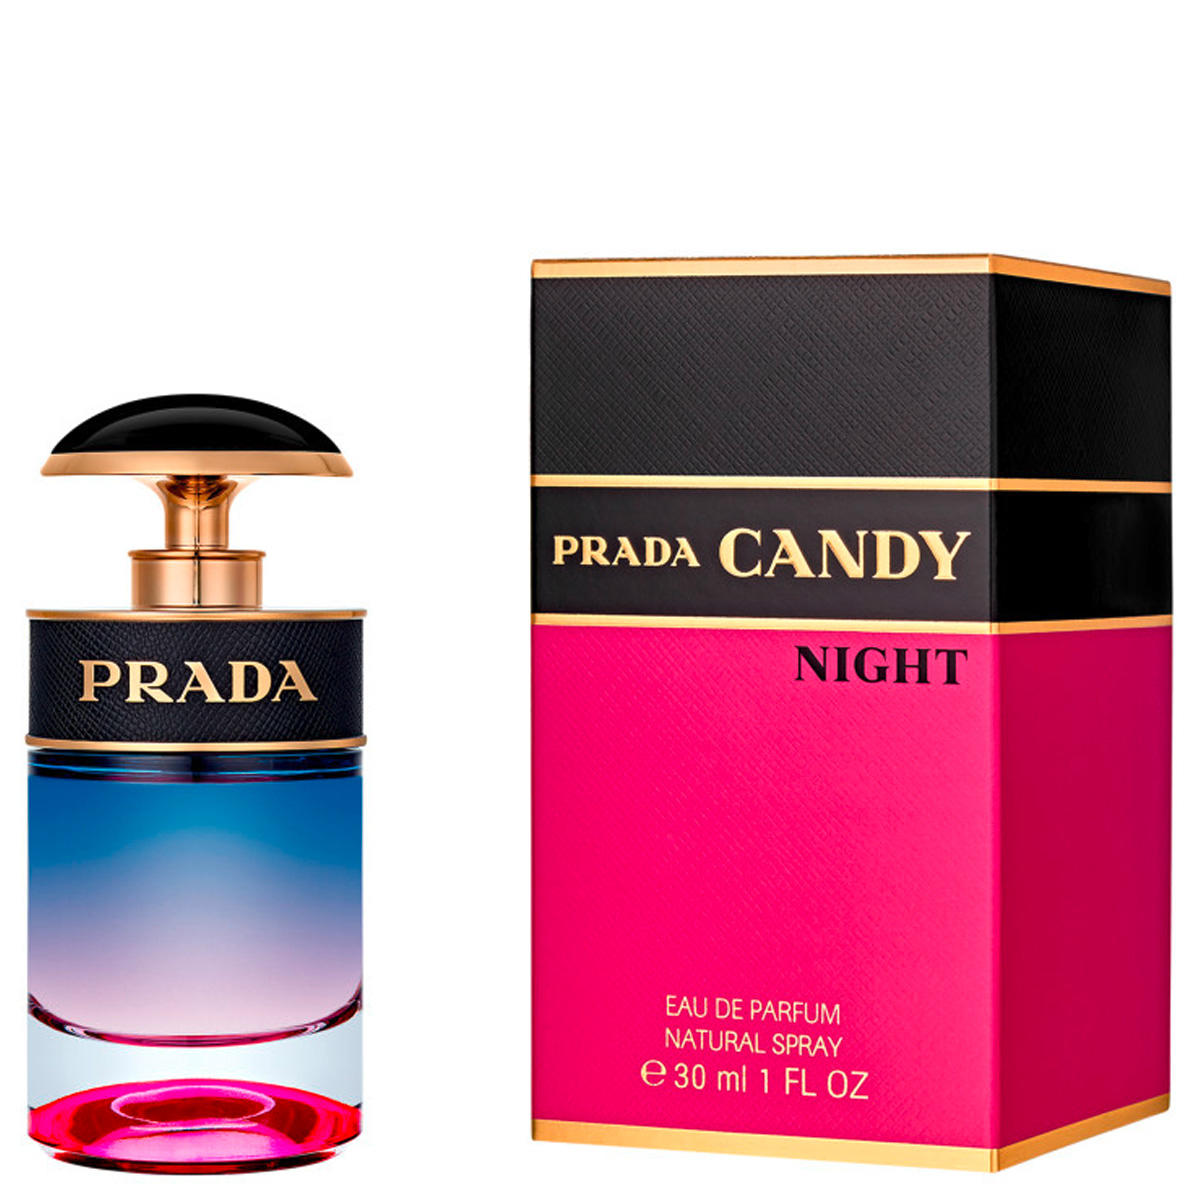 Prada Candy Night Eau de Parfum 30 ml - 2